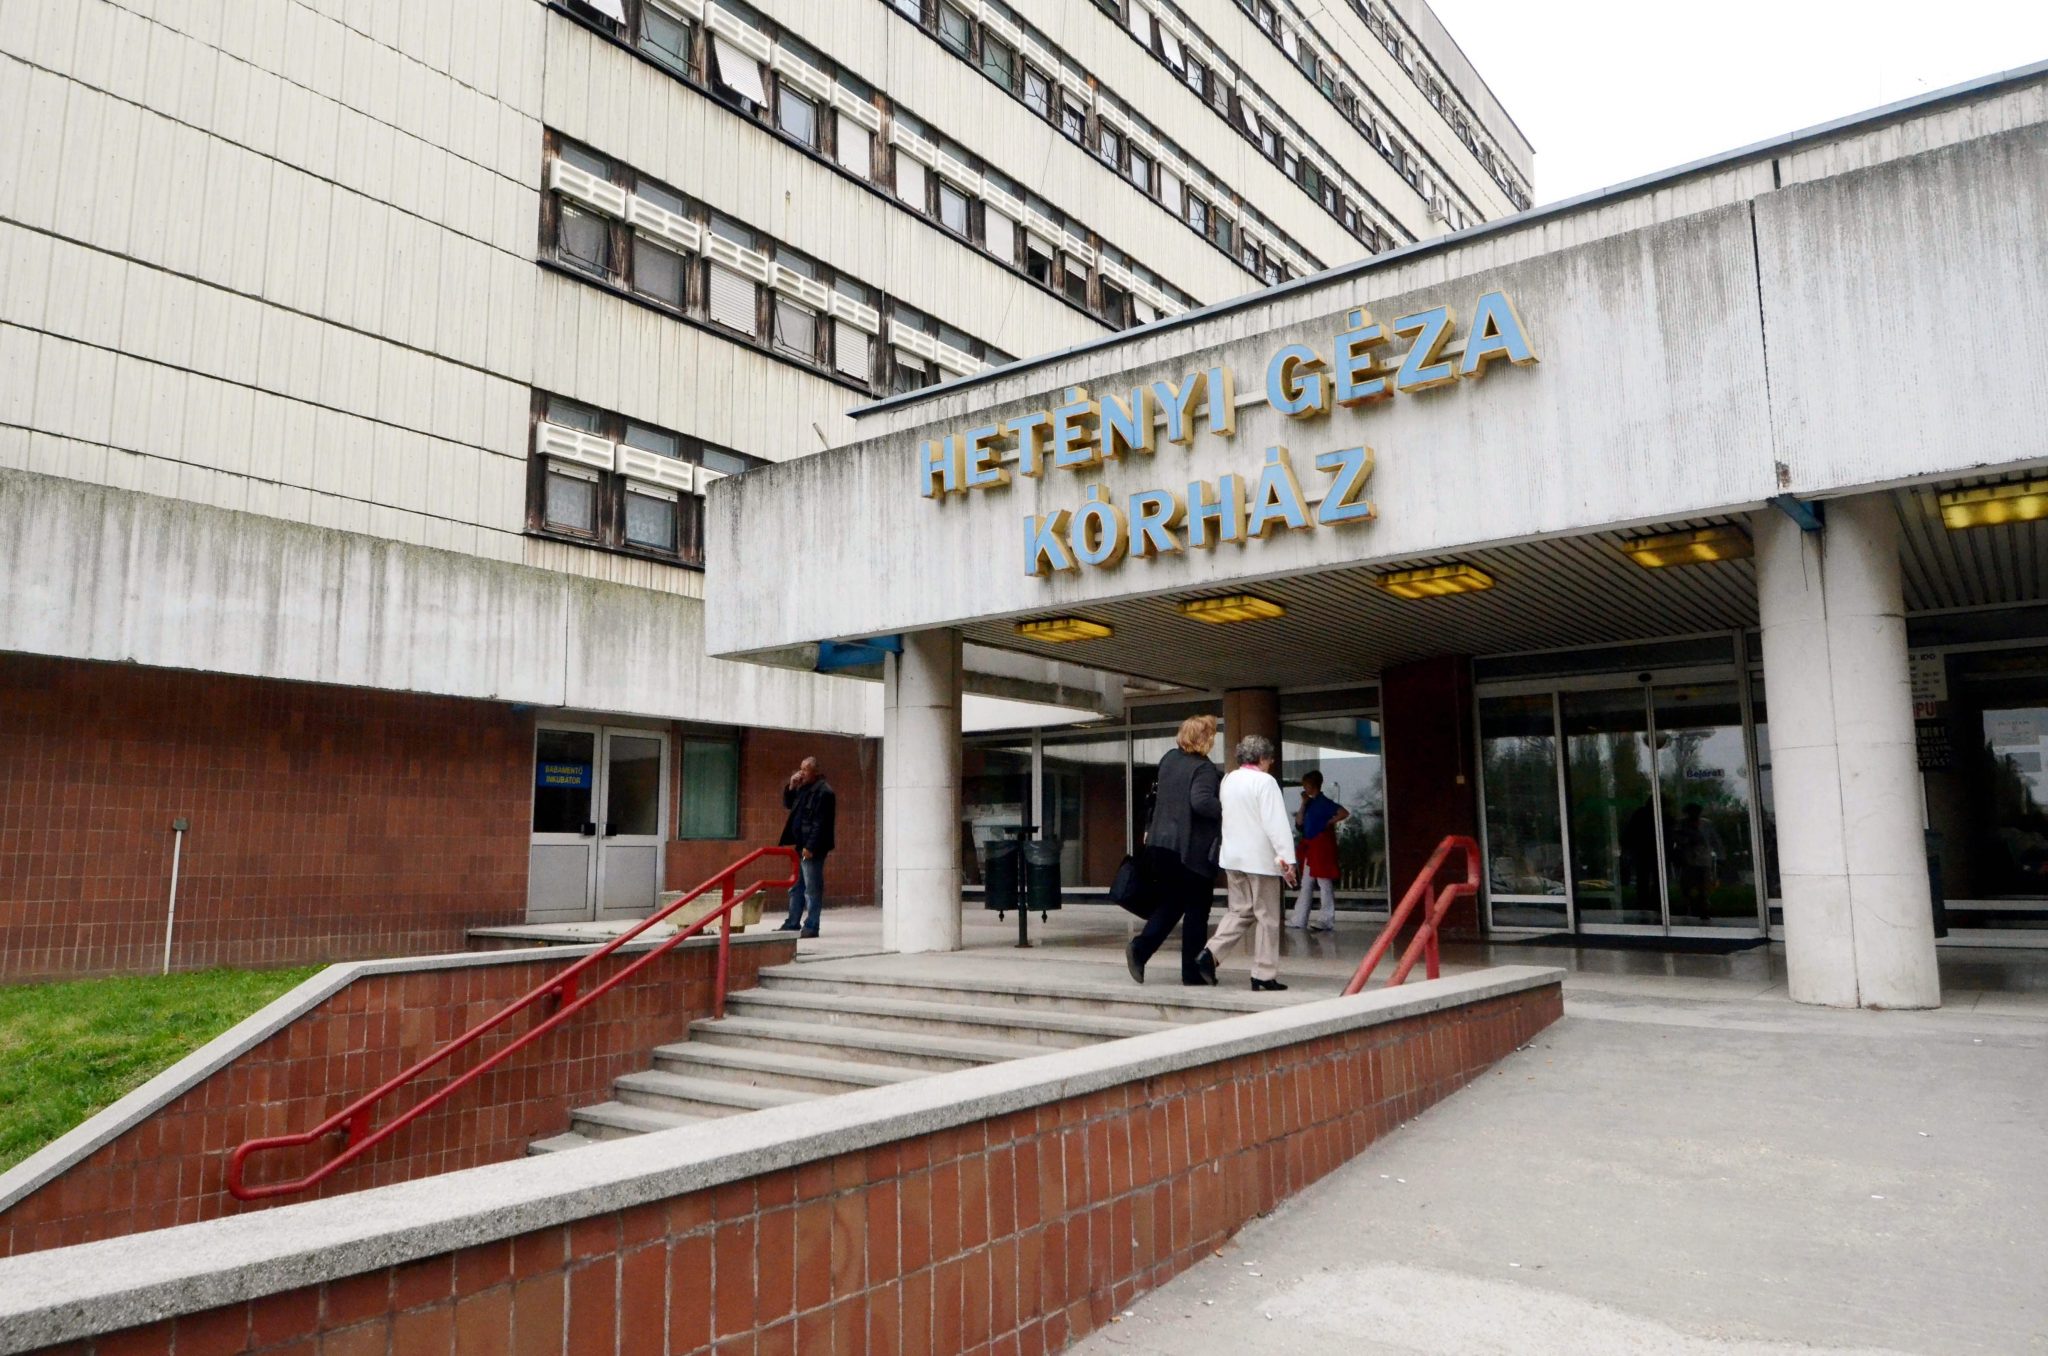 Kanadischer Ungar spendet in Testament große Summe an ungarisches Krankenhaus